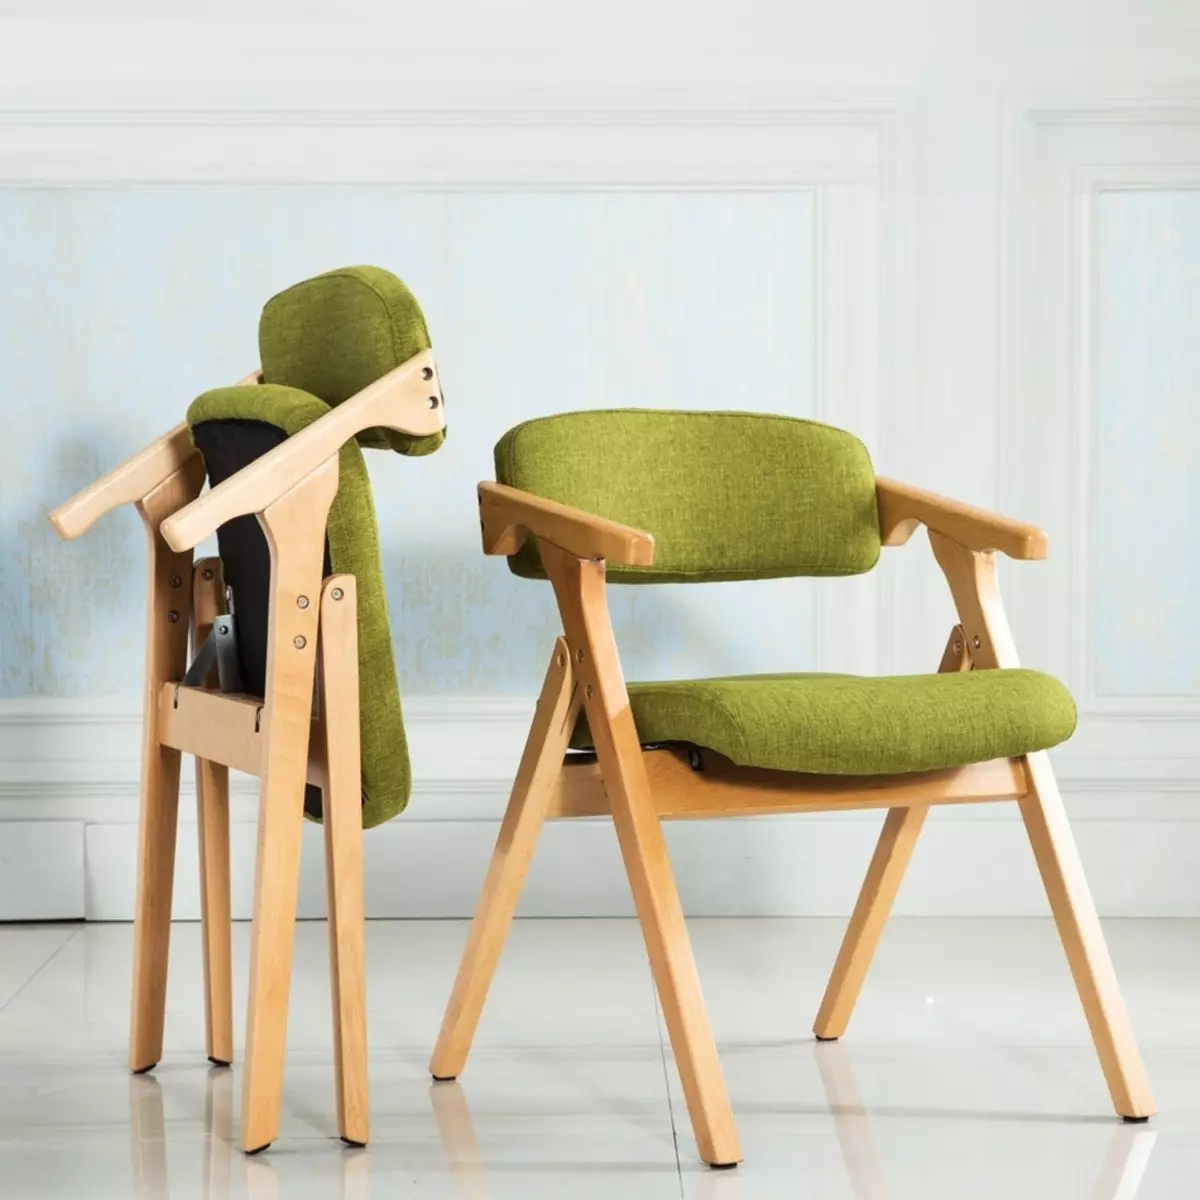 Փափուկ աթոռներ հյուրասենյակի համար. Ամբիոնի աթոռներ Առանձնահատկություններ, փափուկ եւ բազկագործական մոդելներ եւ այլ տարբերակներ 9751_22